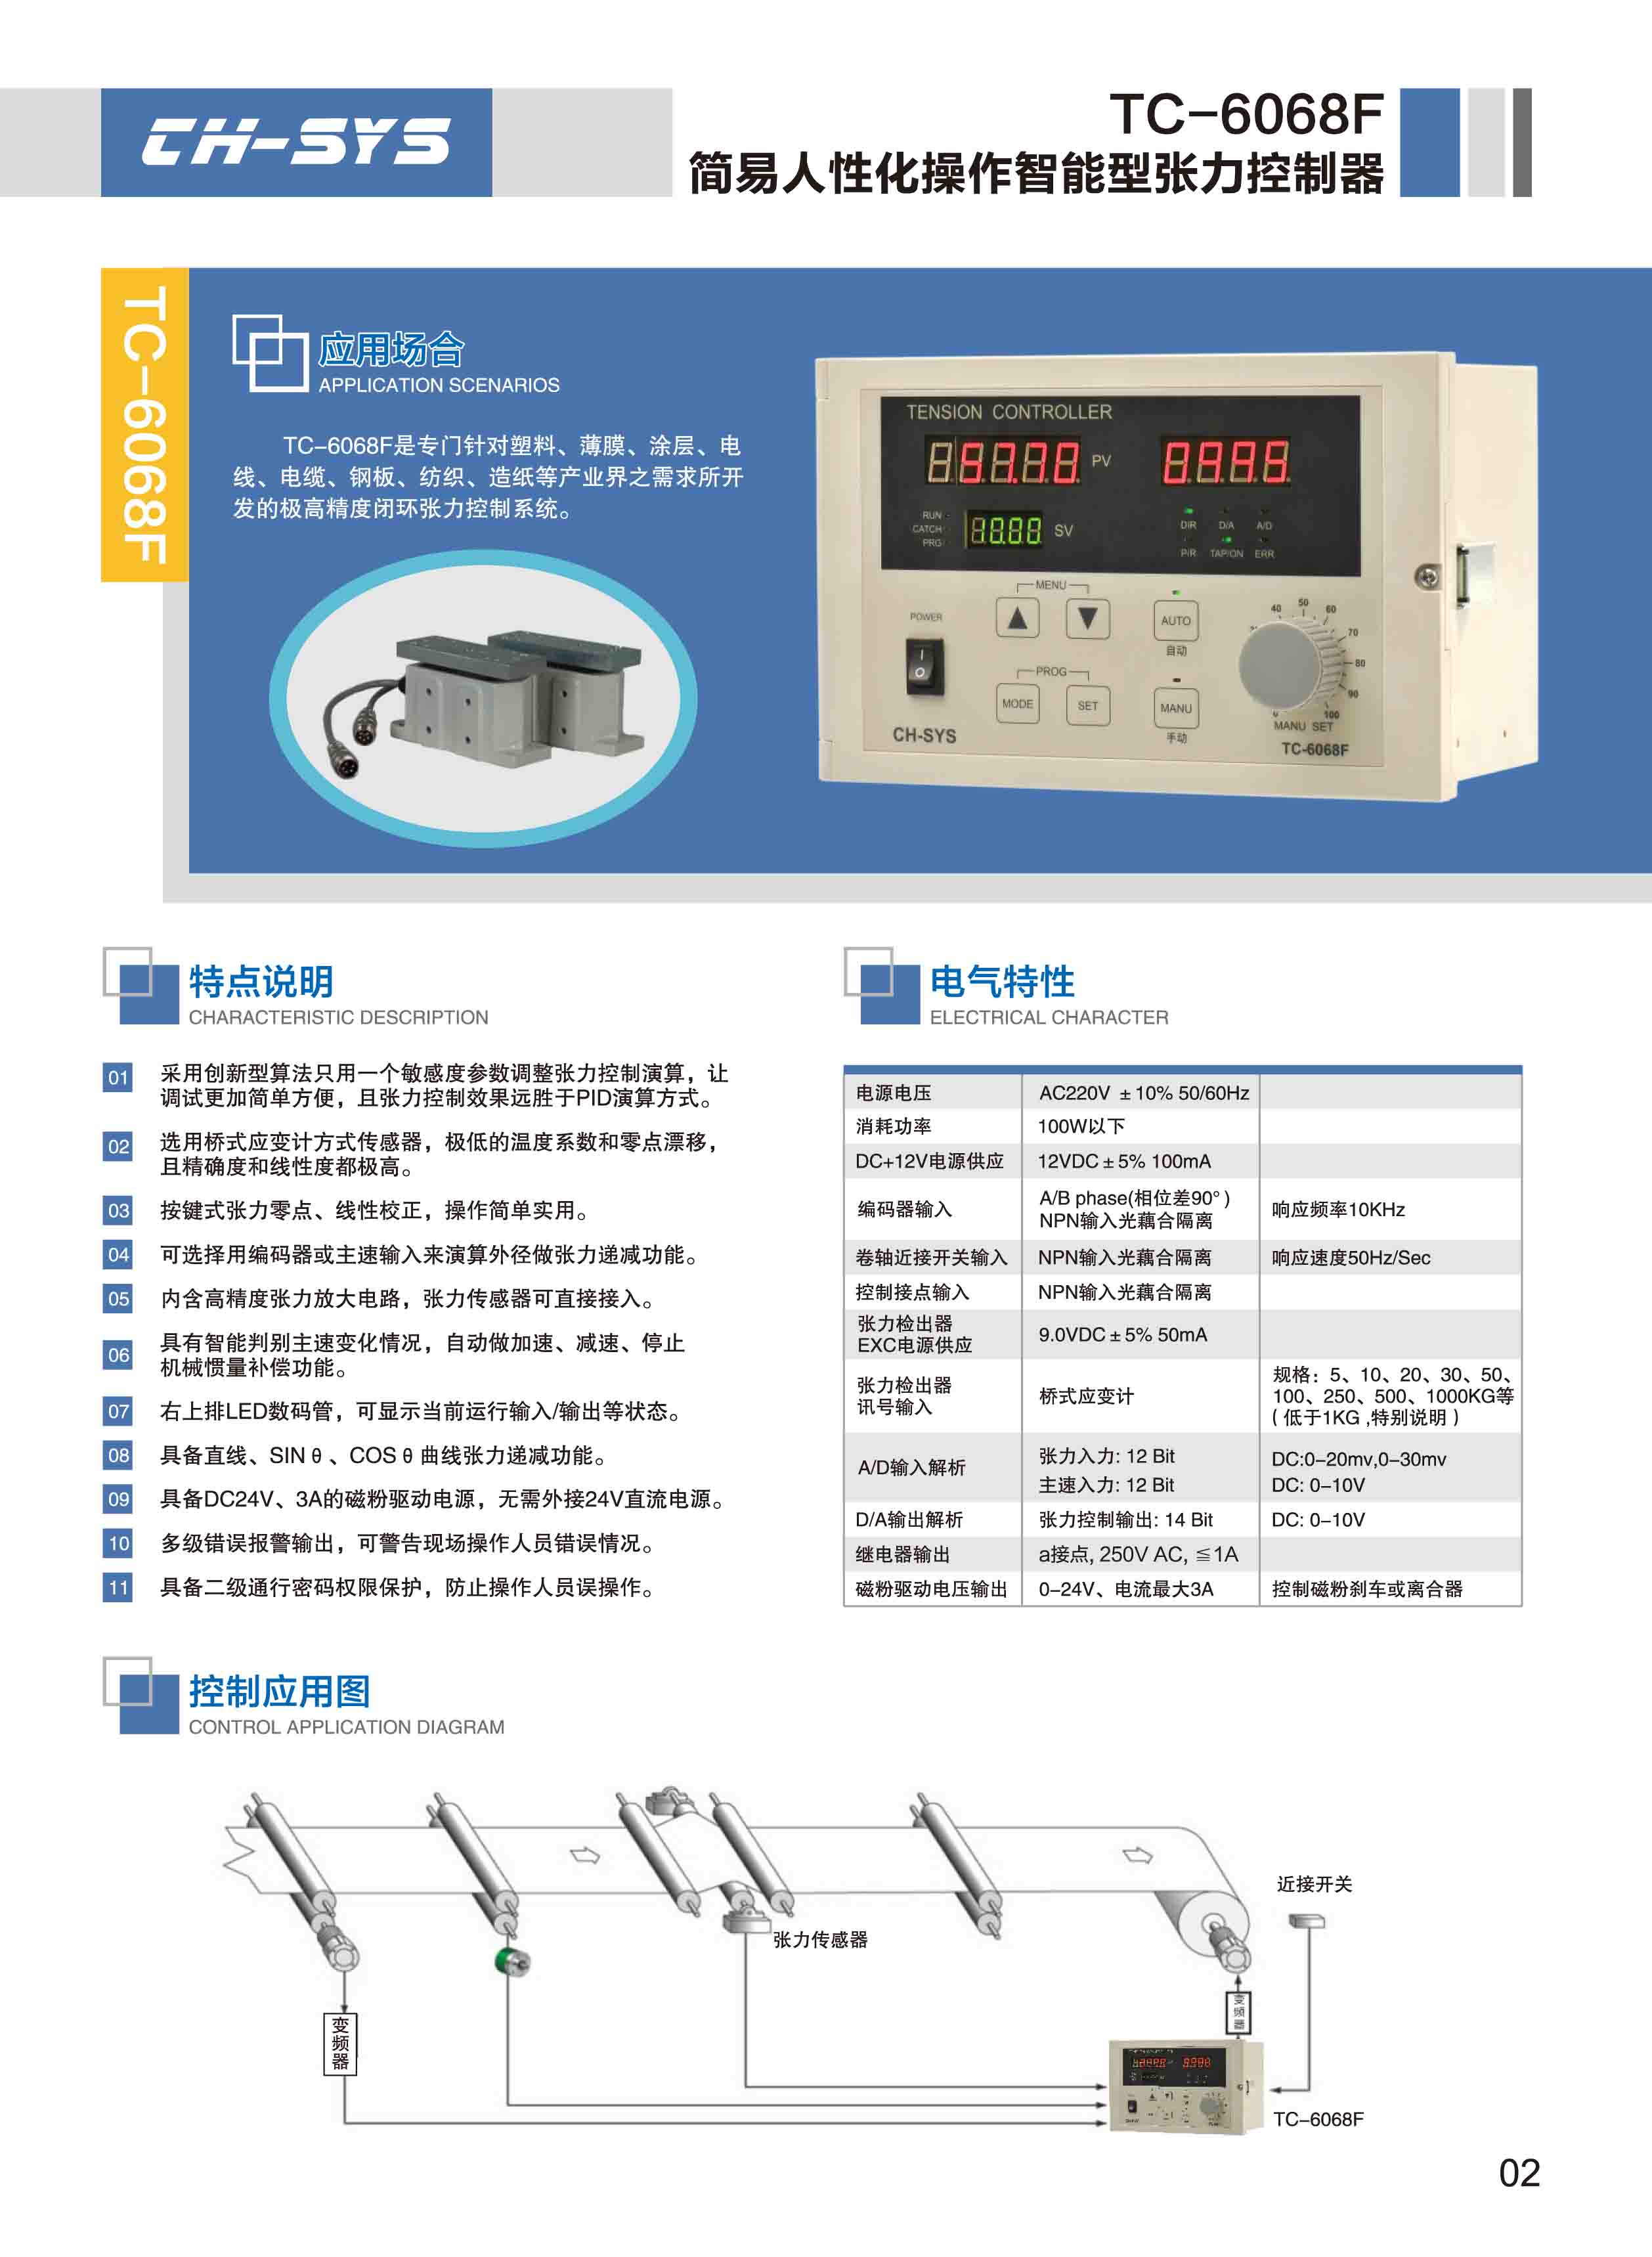 台湾企宏全自动张力控制器TC-6068F 张力控制器,TC-6068F,控制器,TC-6168F,TC-618F